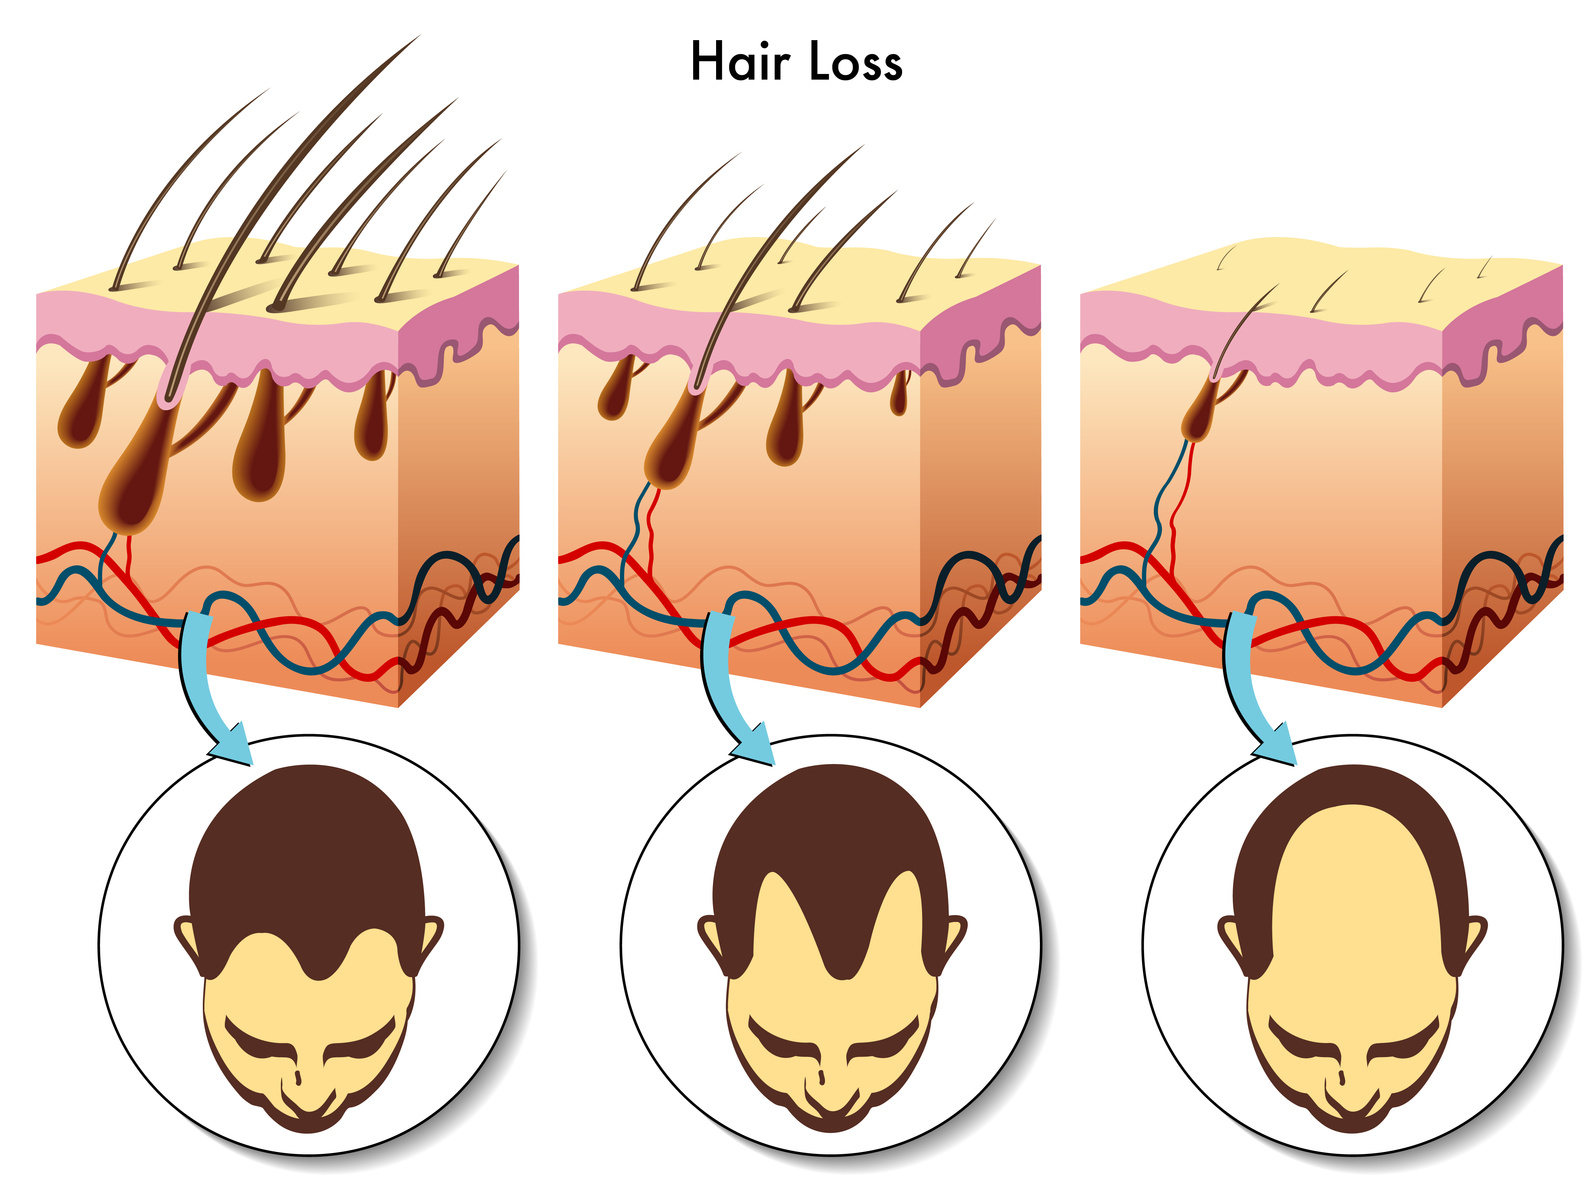 Fakta o vypadávání vlasů. Co můžeme změnit?